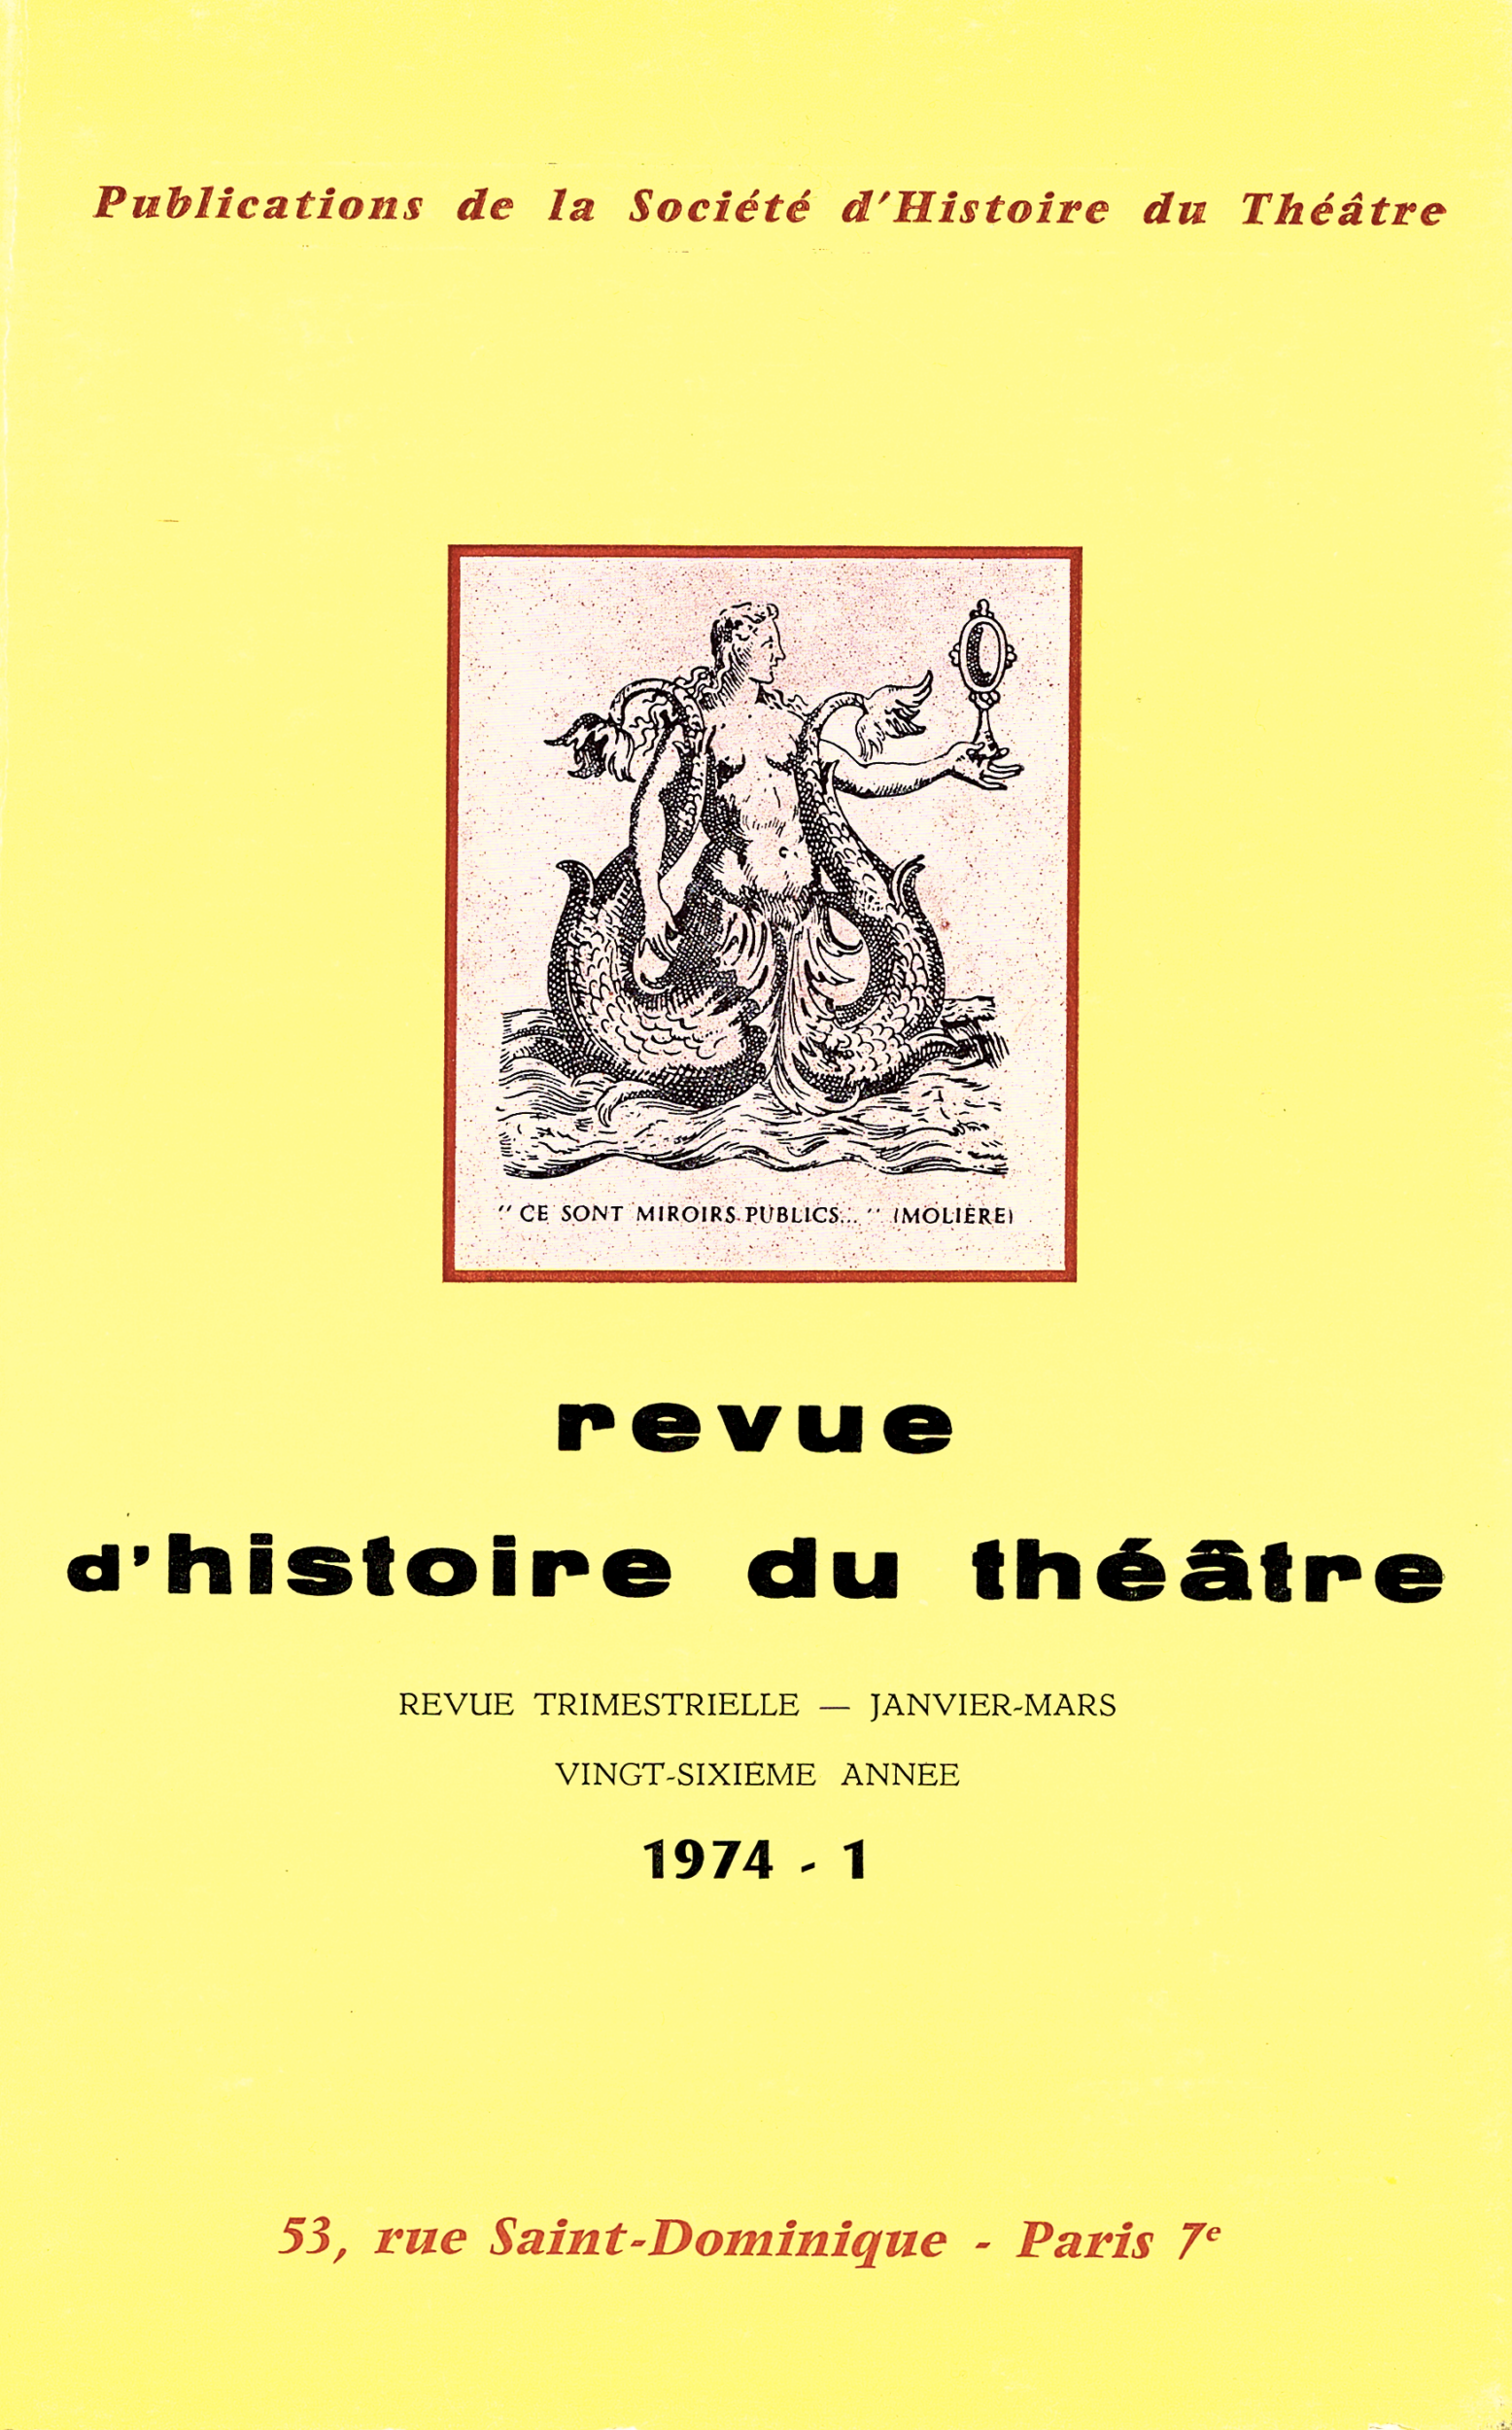 Actes des Journées internationales Molière – (UNESCO 1973) – Paris, 18-21 juin 1973 – Maison de l’Unesco – I